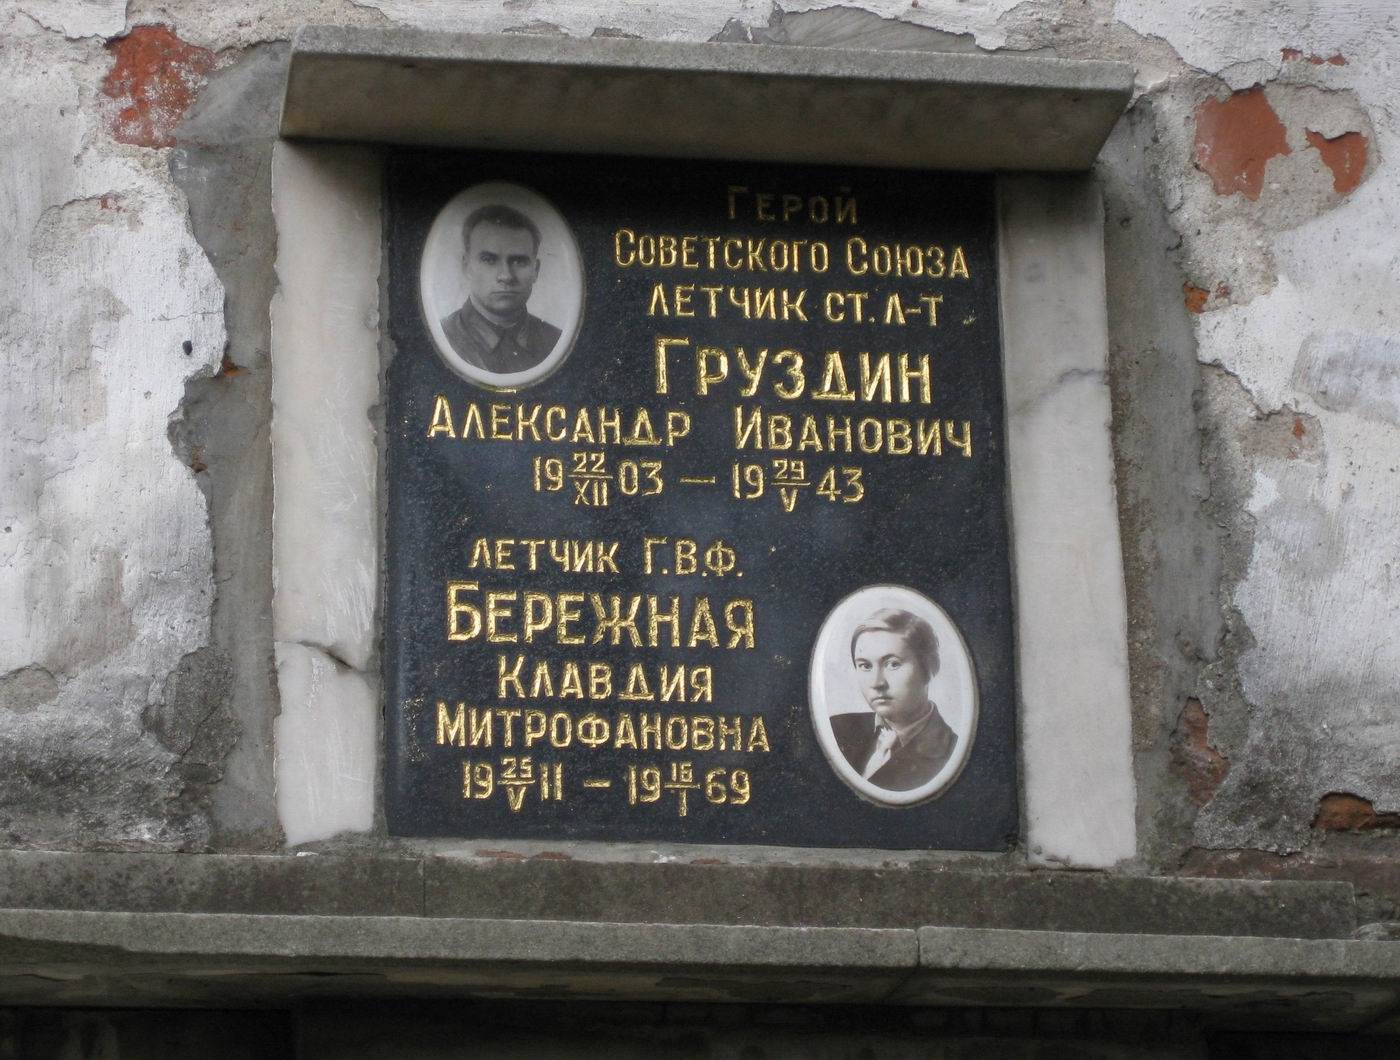 Плита на нише Груздина А.И. (1903-1943), на Новодевичьем кладбище (колумбарий [4]-19-1).